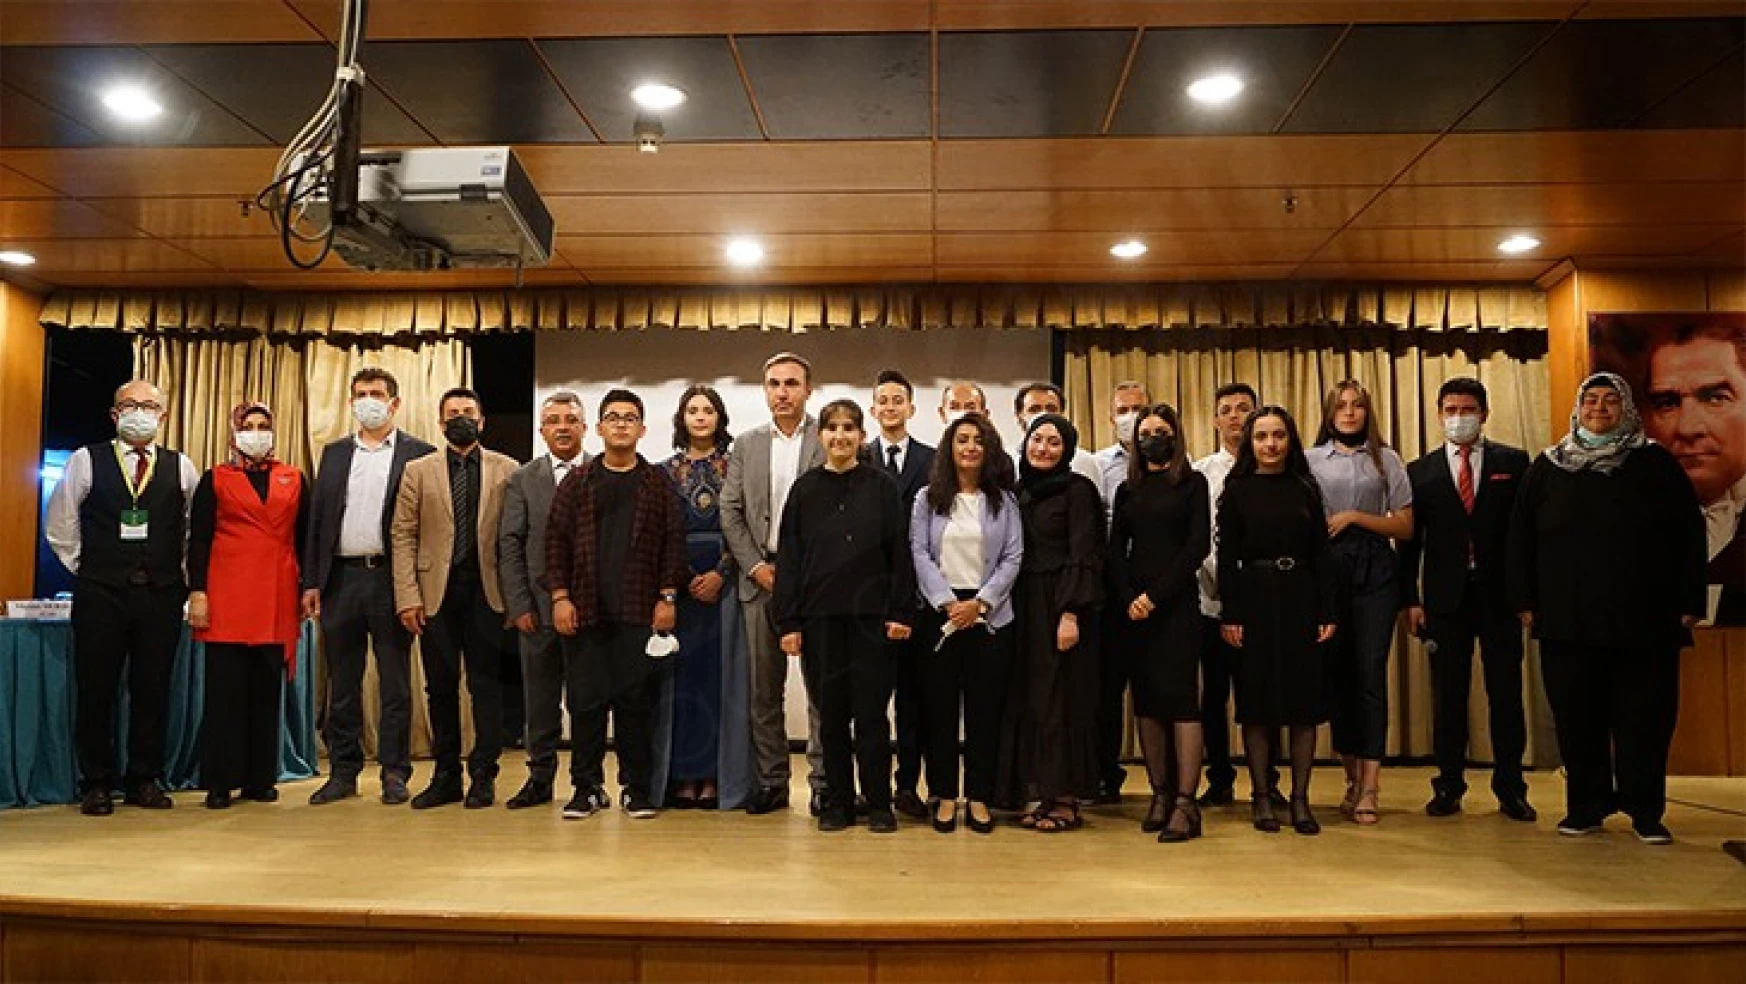 Kahramanmaraş'ta lise öğrencileri Mehmet Akif'in şiirlerini seslendirdi